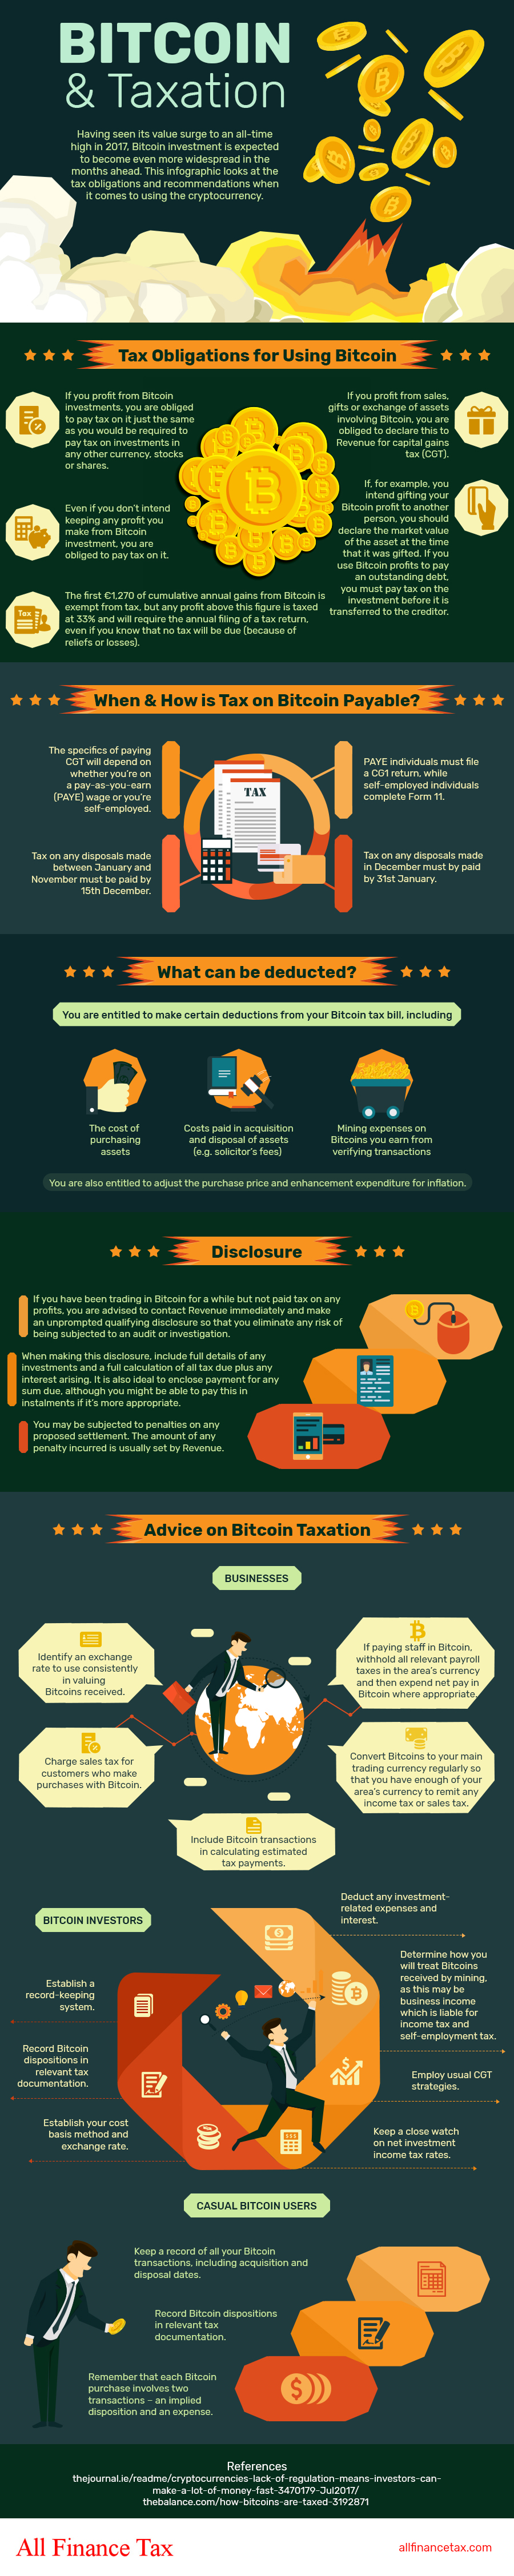 Bitcoin-&-Taxation-Infographic